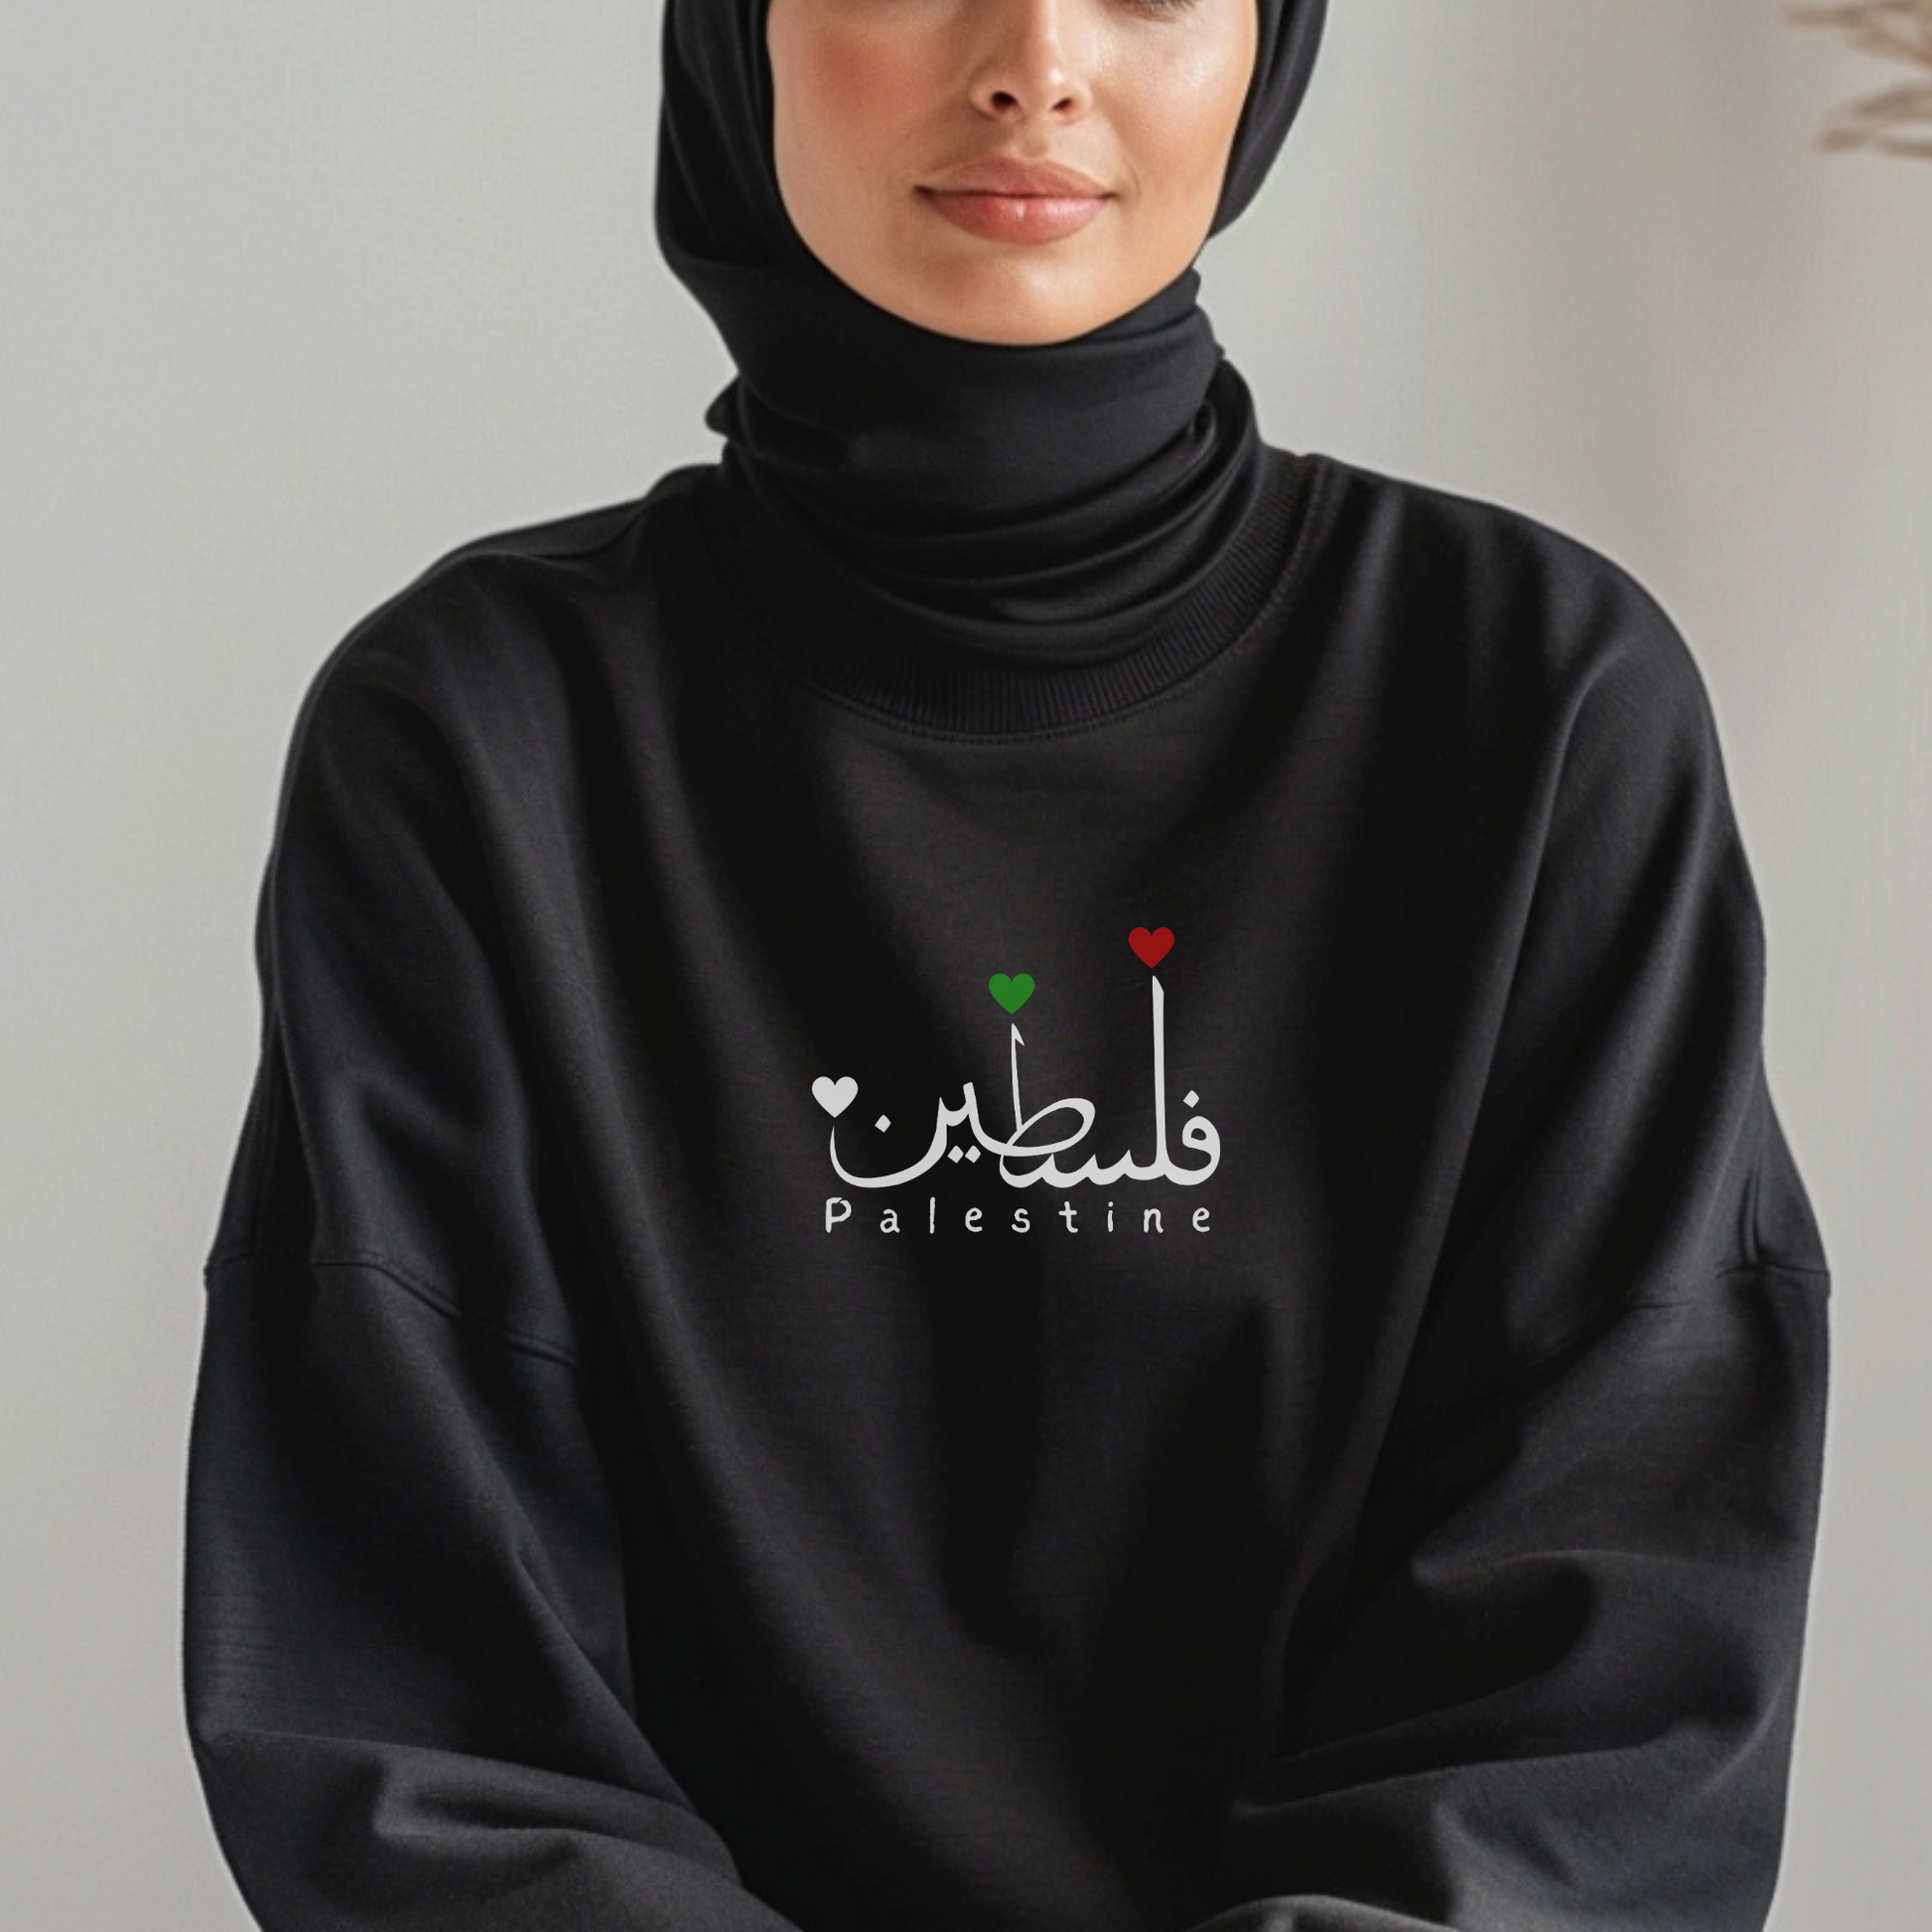 Palestine Arabic Sweatshirt - Support Palestine Apparel